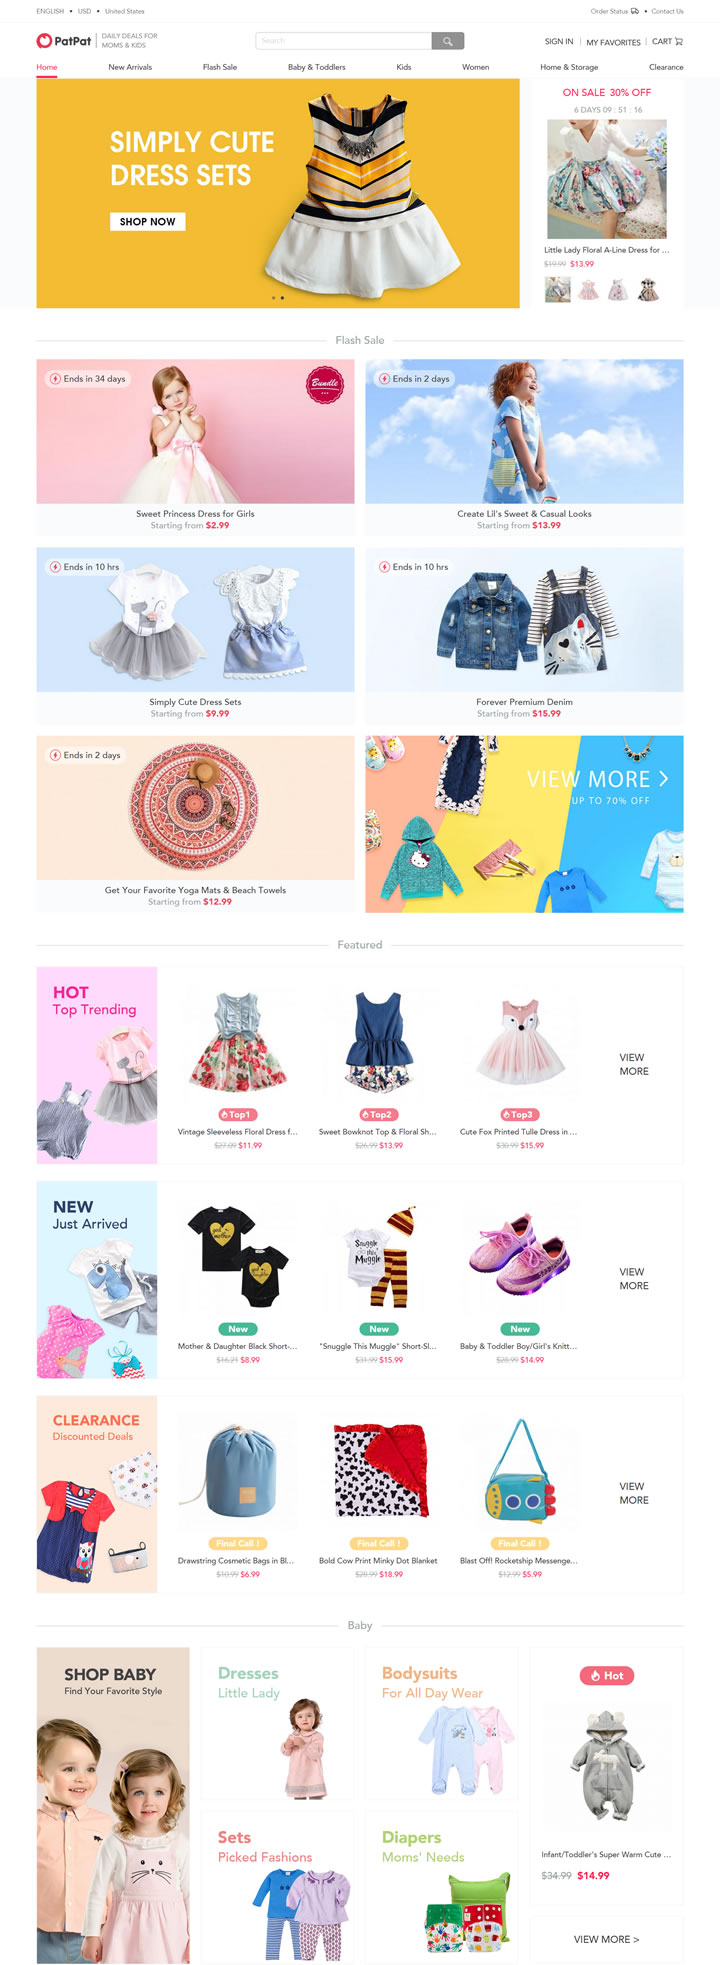 美國嬰兒和兒童服裝購物網站：PatPat 美國購物網站 MeetKK-MeetKK